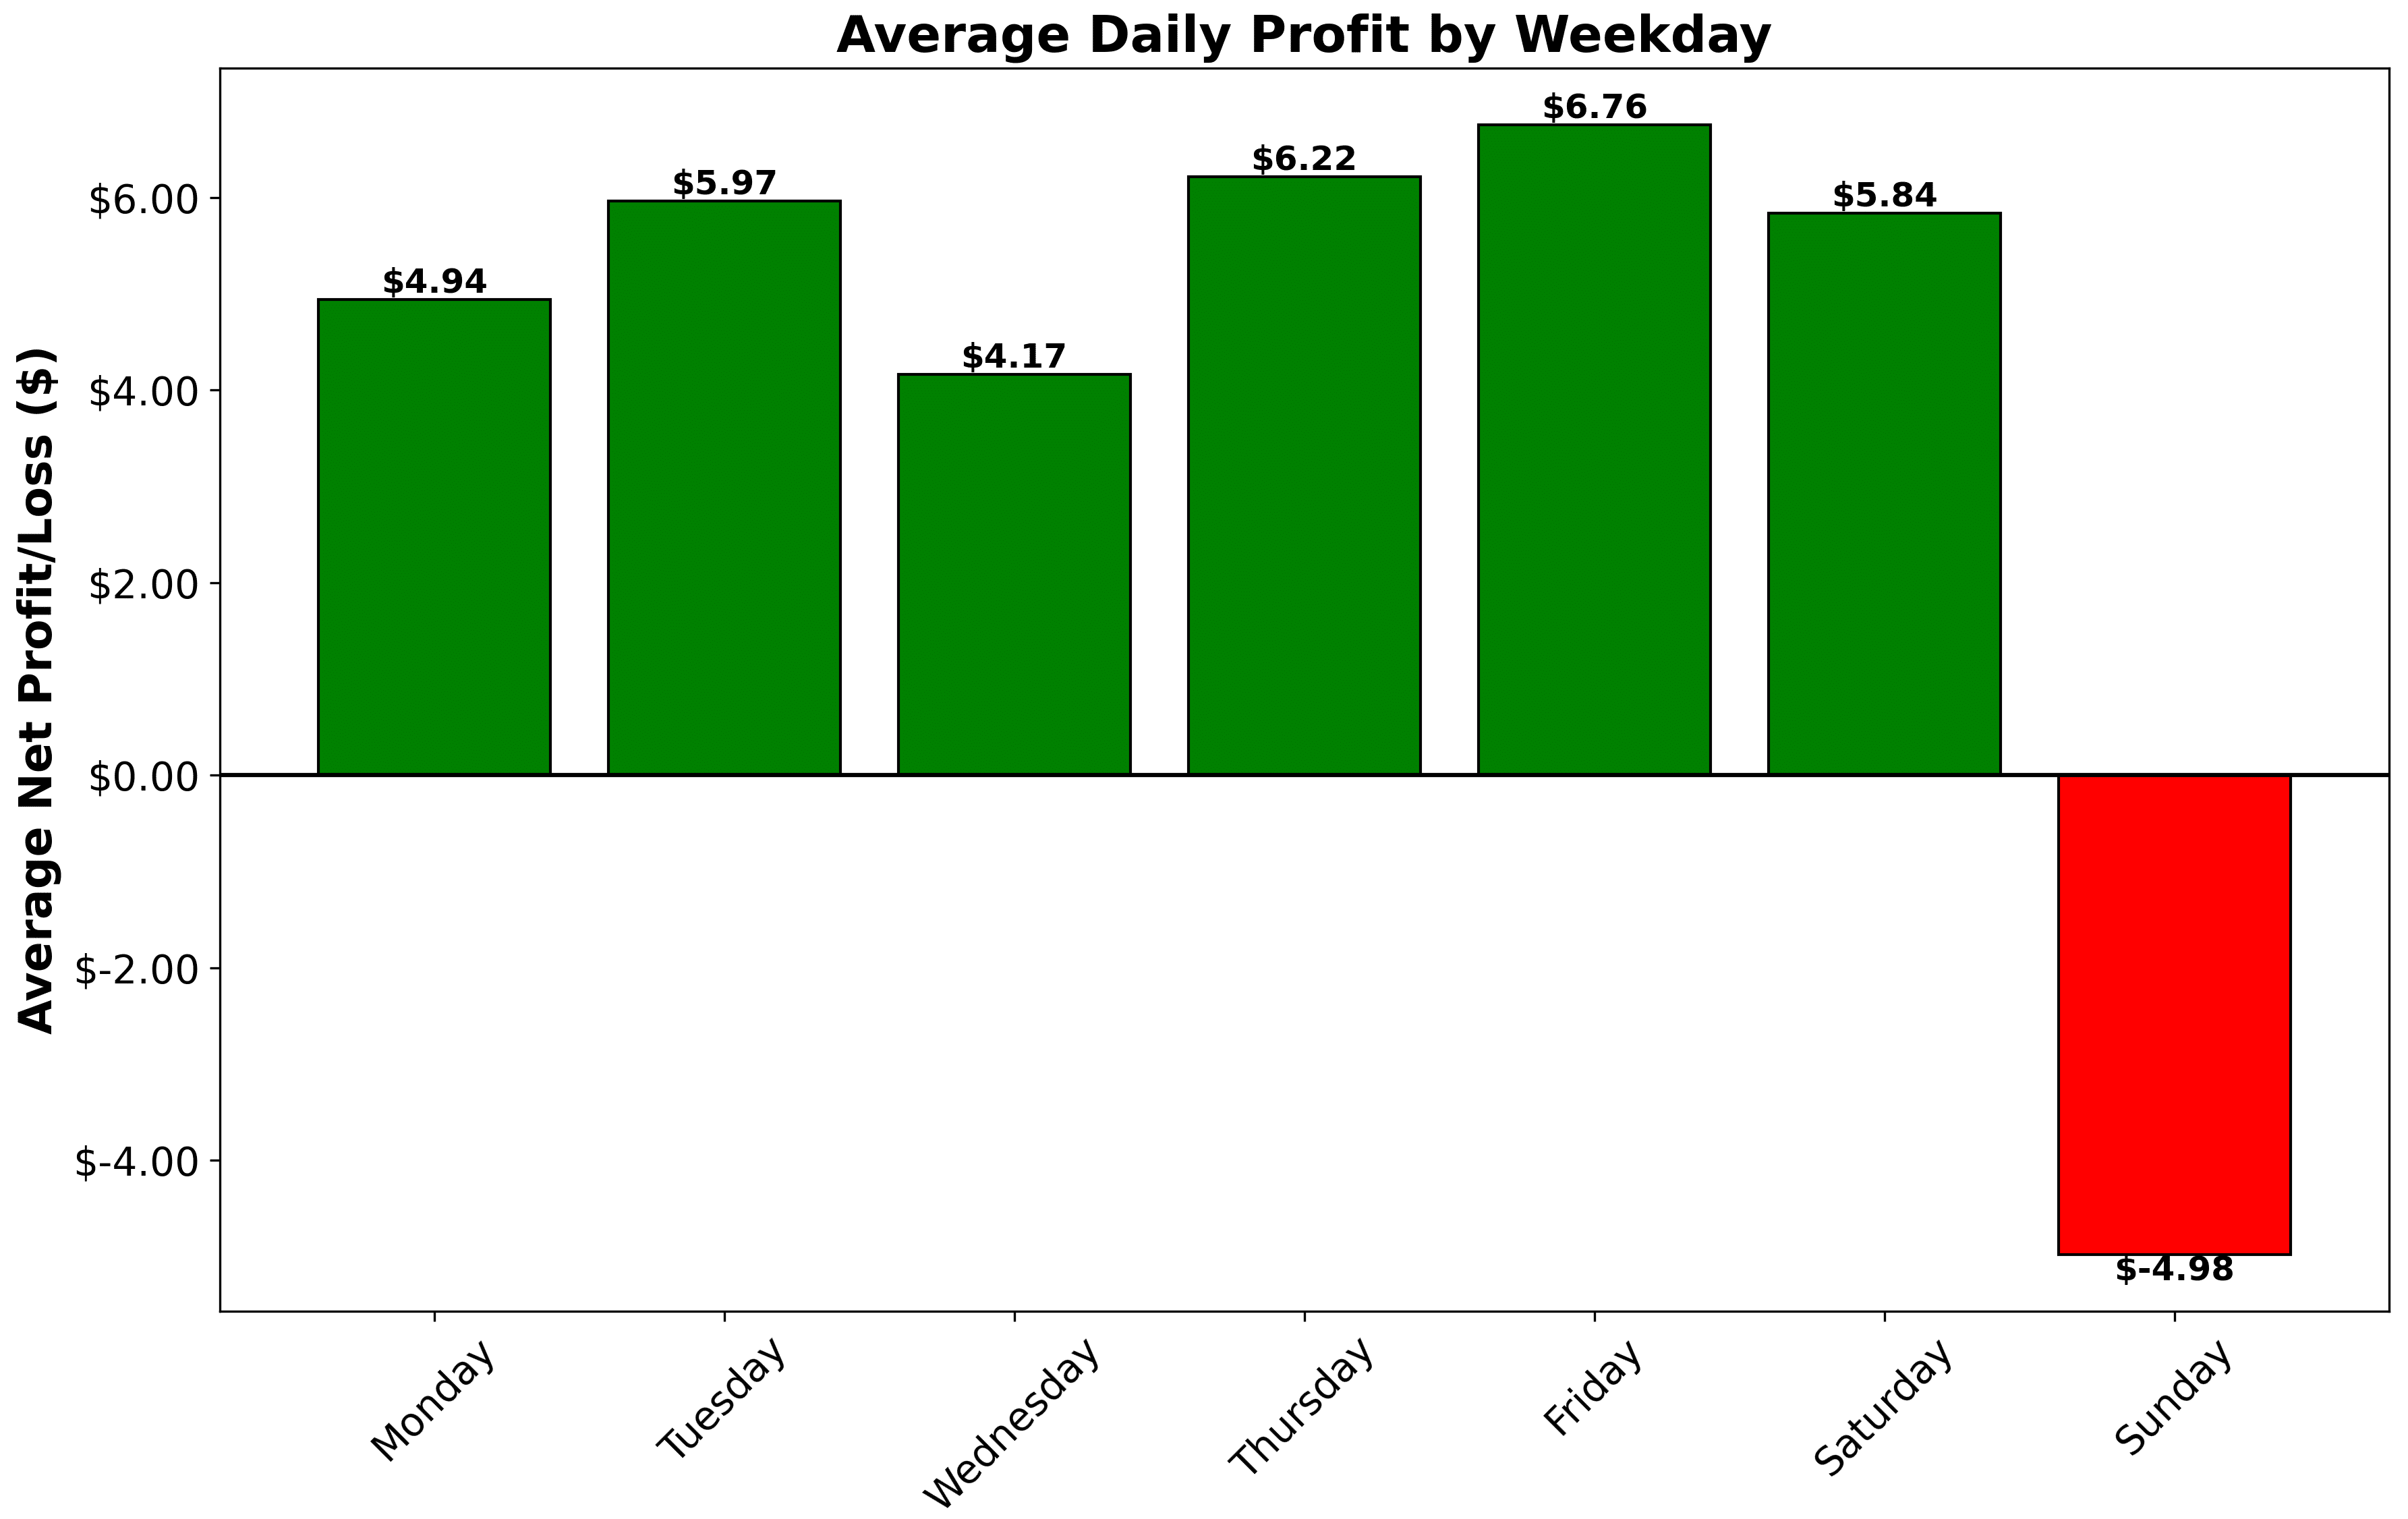 Weekdaywise Average Profits bar graph